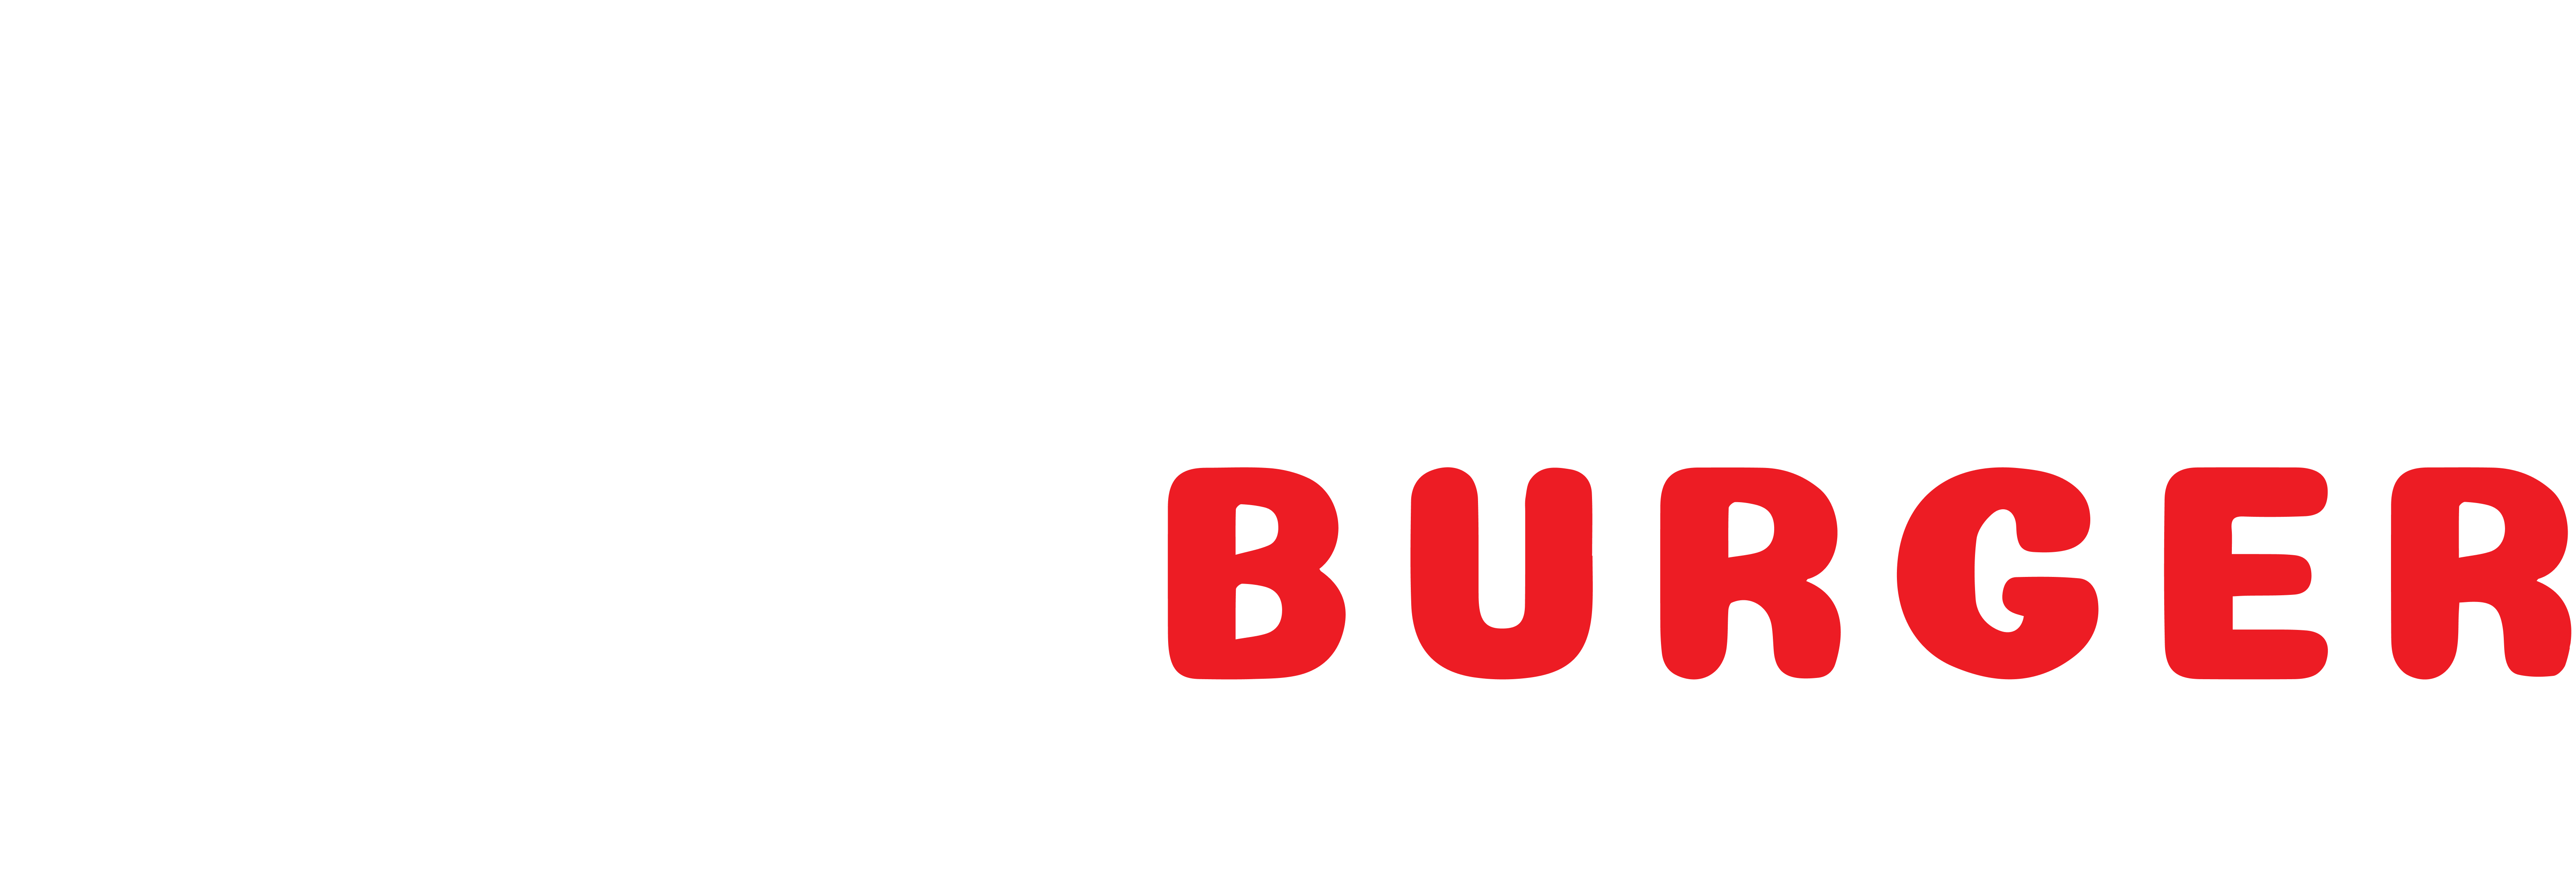 Prime Burger Thailand